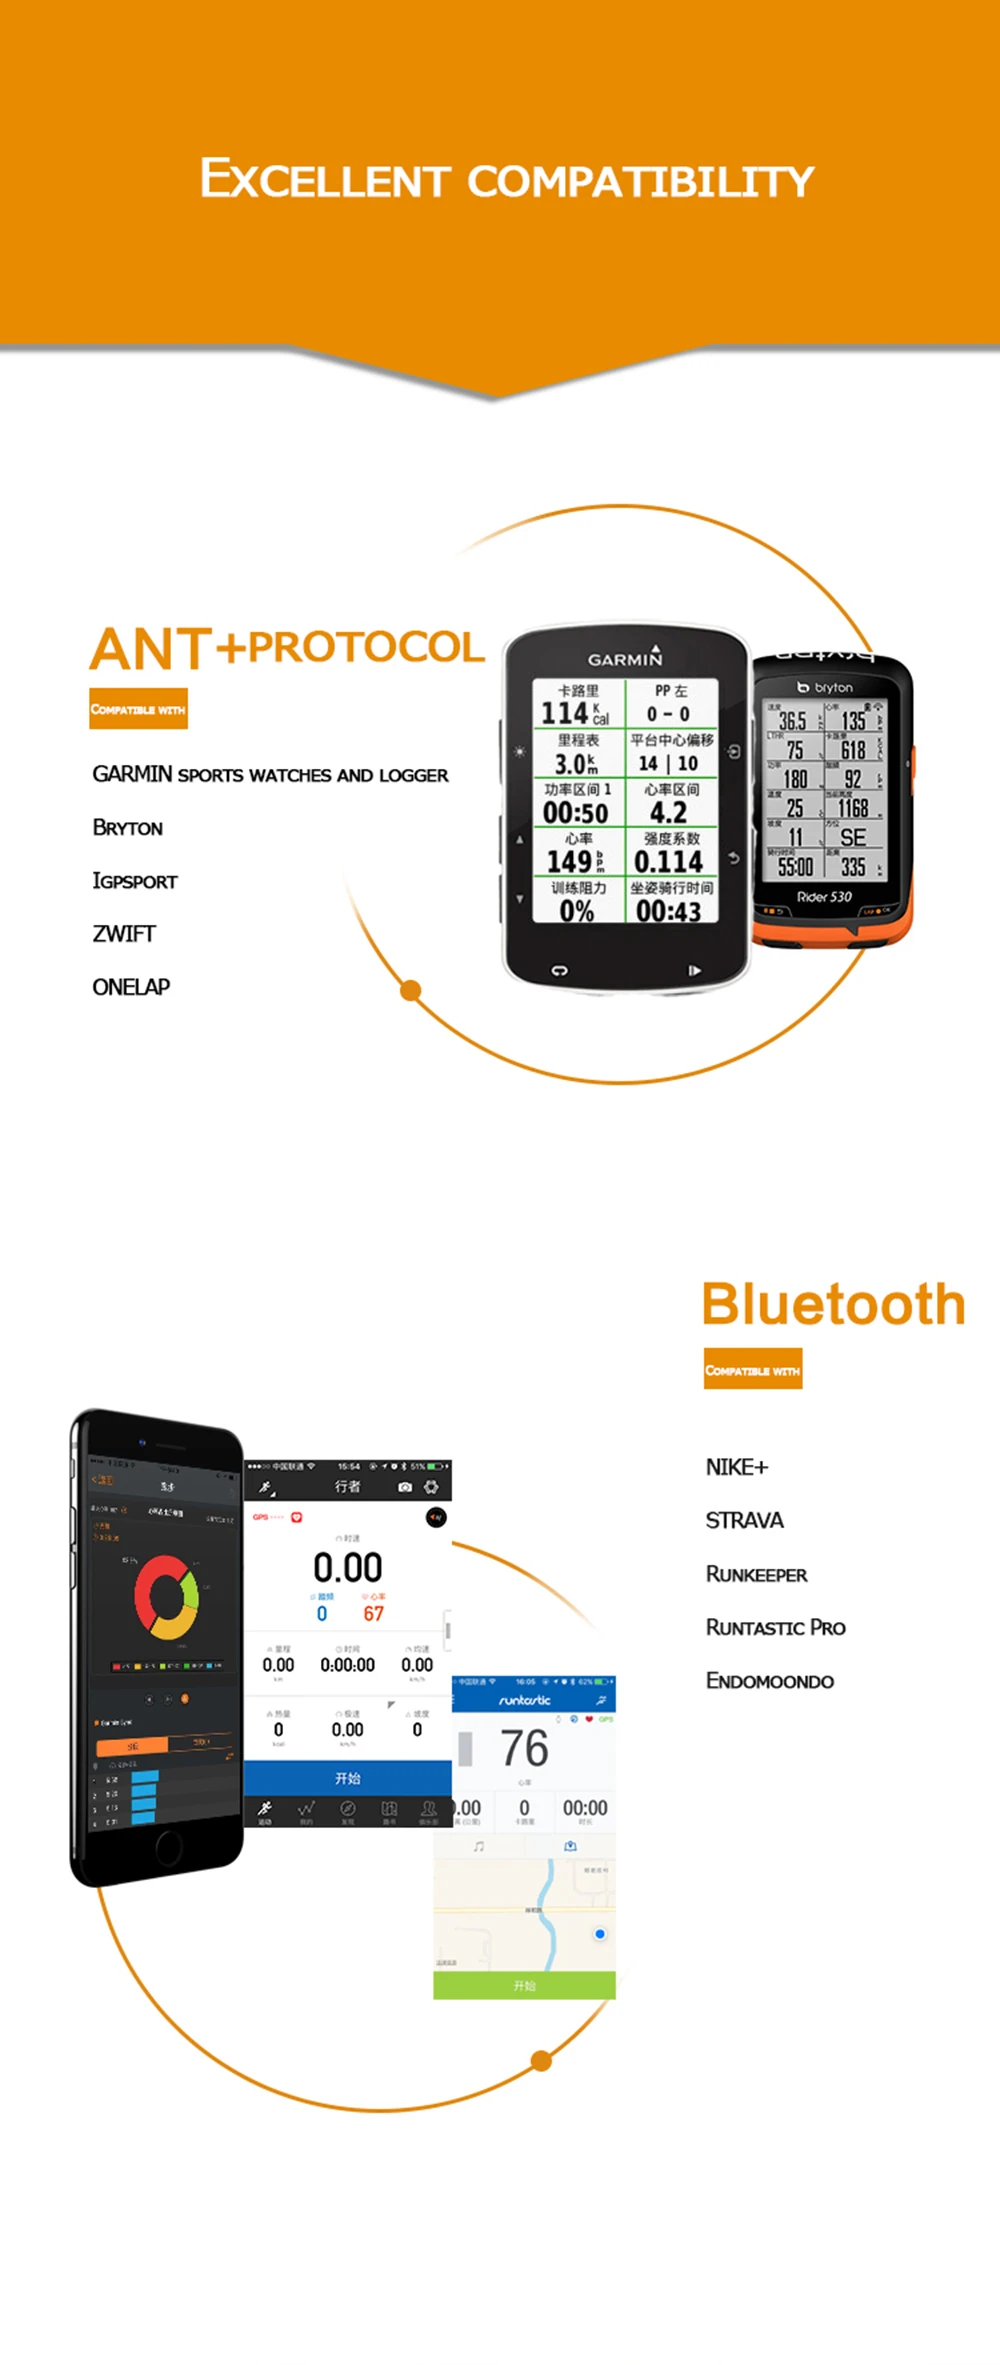 Magene монитор сердечного ритма Bluetooth 4,0 ANT+ датчик для GARMIN Bryton IGPSPORT компьютер Бег Спорт с нагрудным ремнем MHR10 обновление